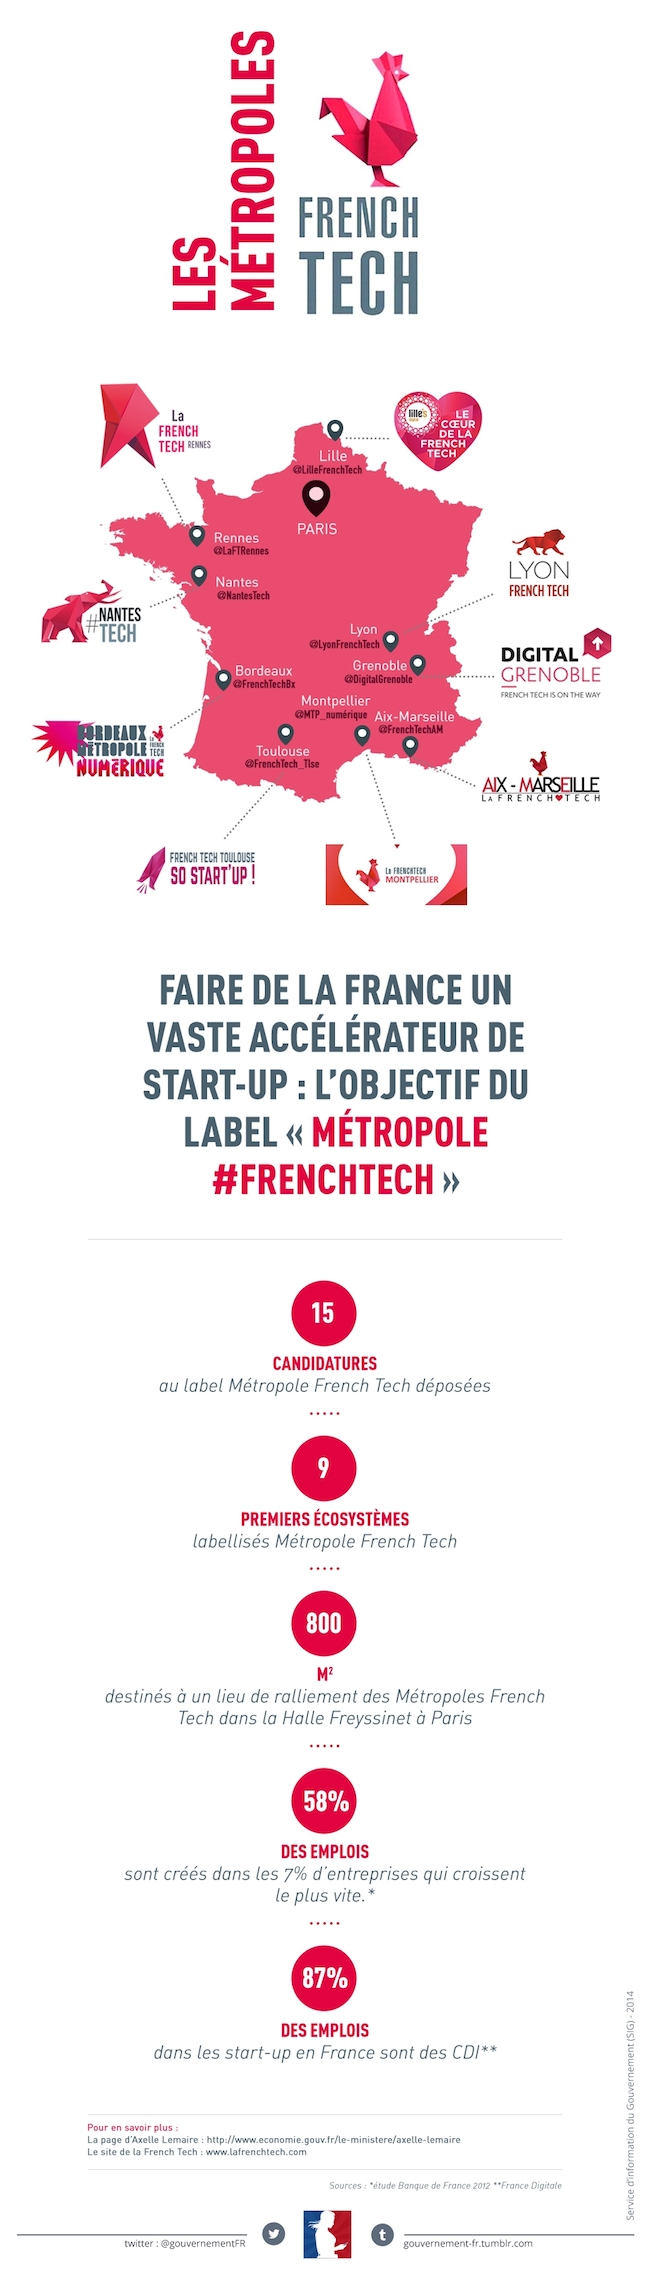 Nantes dans les 9 métropoles labellisées French Tech